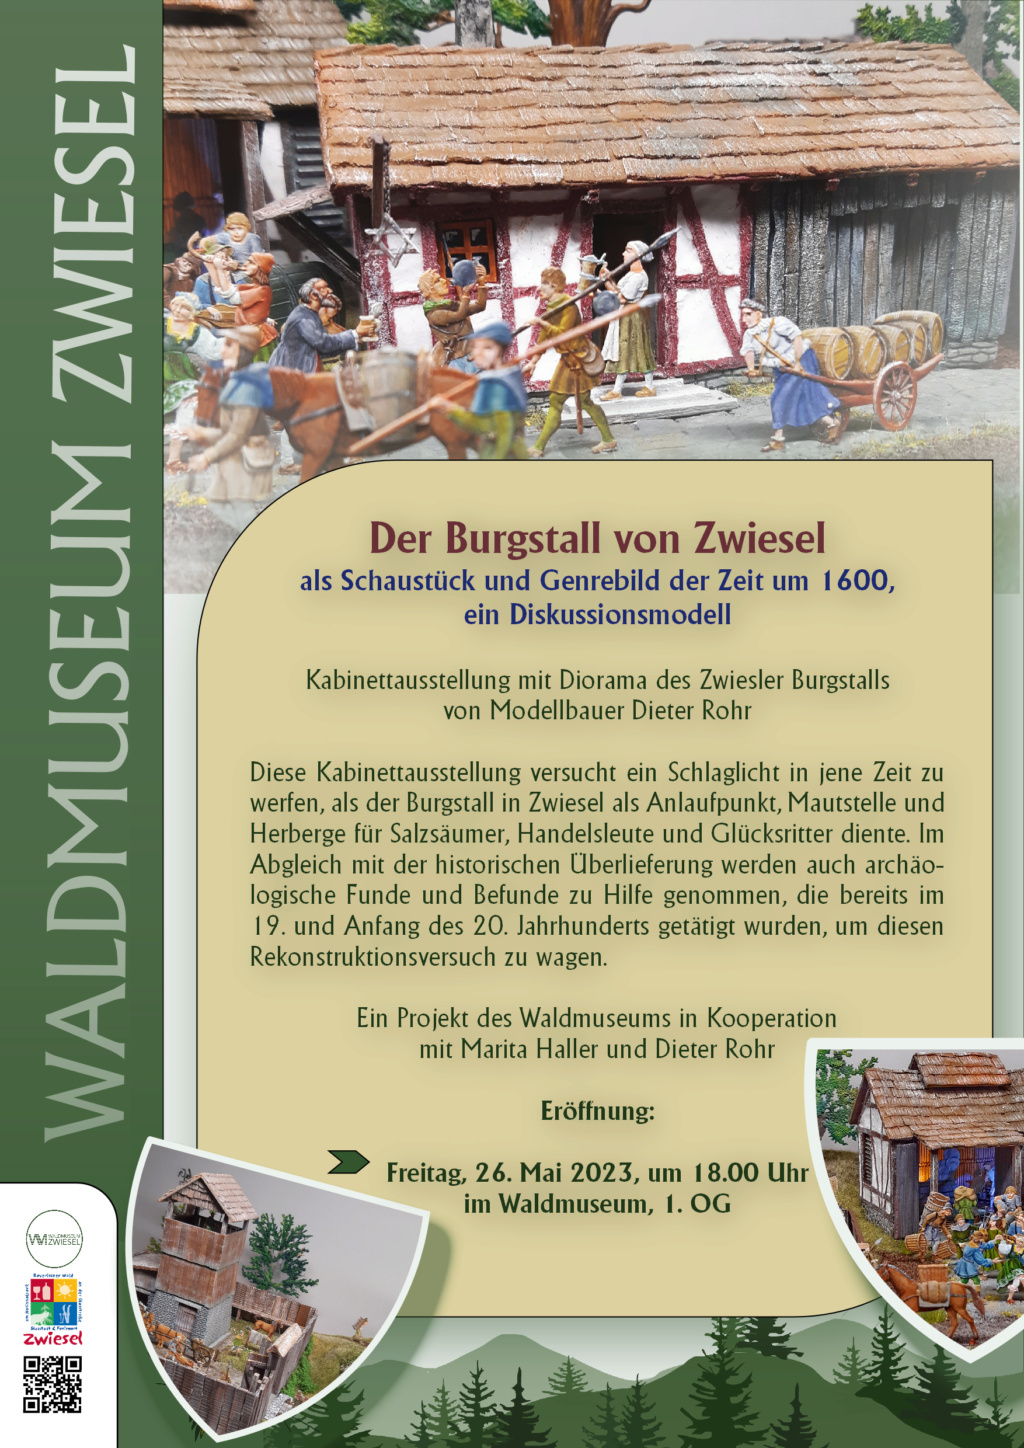 Der Burgstall Zwiesel um 1600, 30 mm Zinnfiguren - Seite 3 Progra10